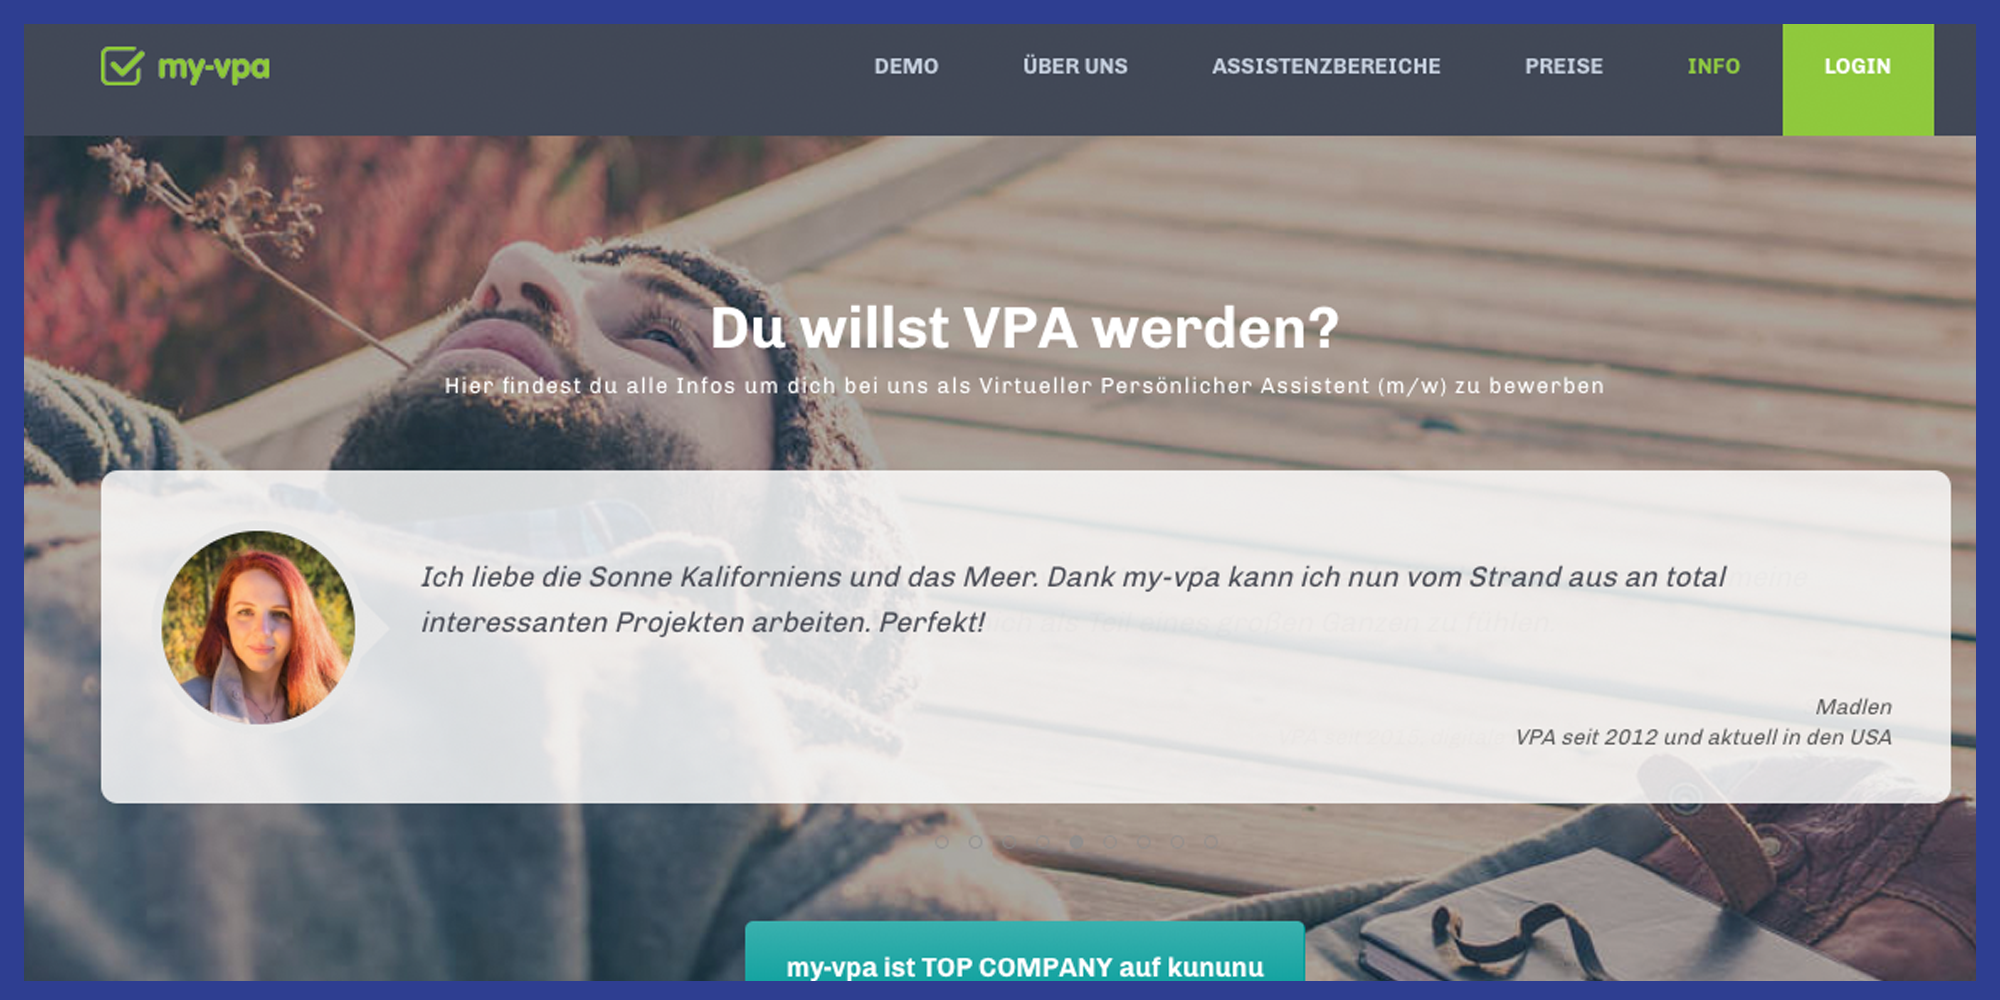 Earn money on the side as a VPA in Austria